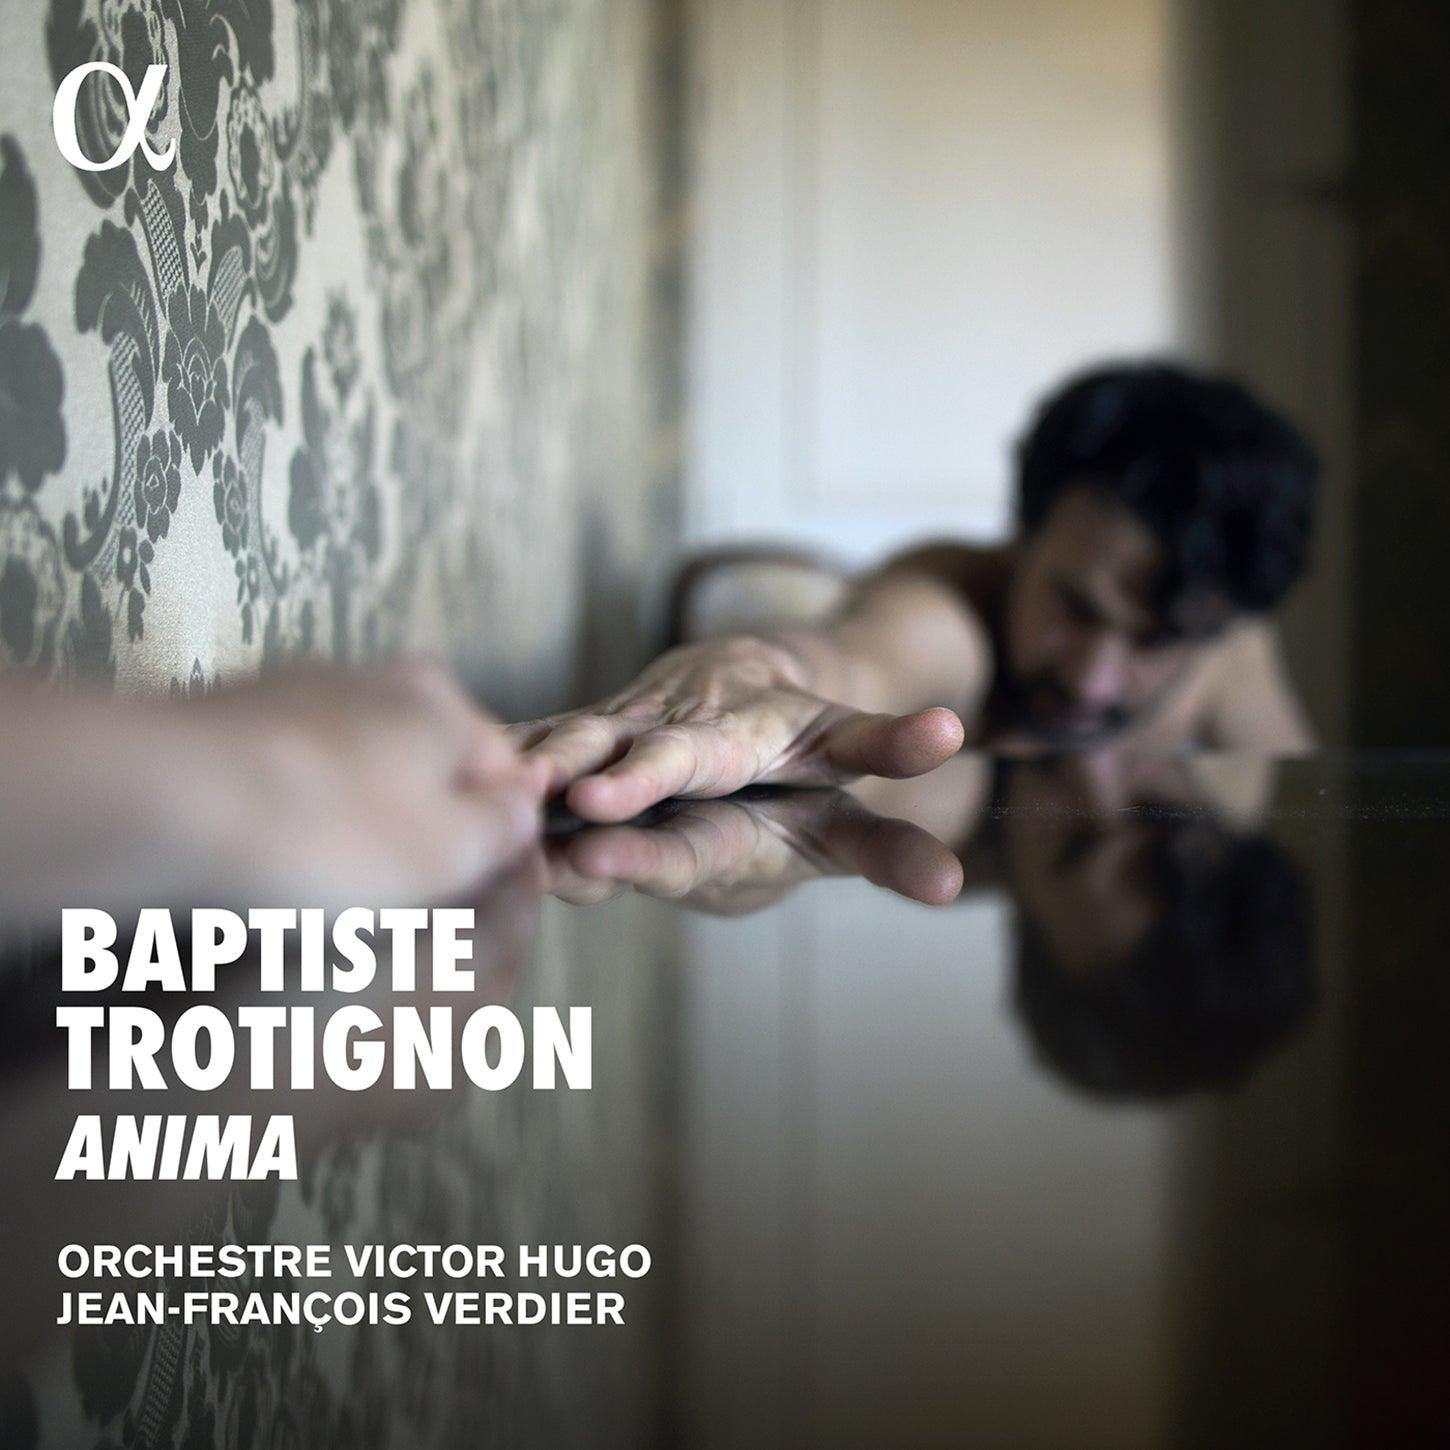 Trotignon: Anima / Verdier, Orchestre Victor Hugo Franche-Comté - ArkivMusic